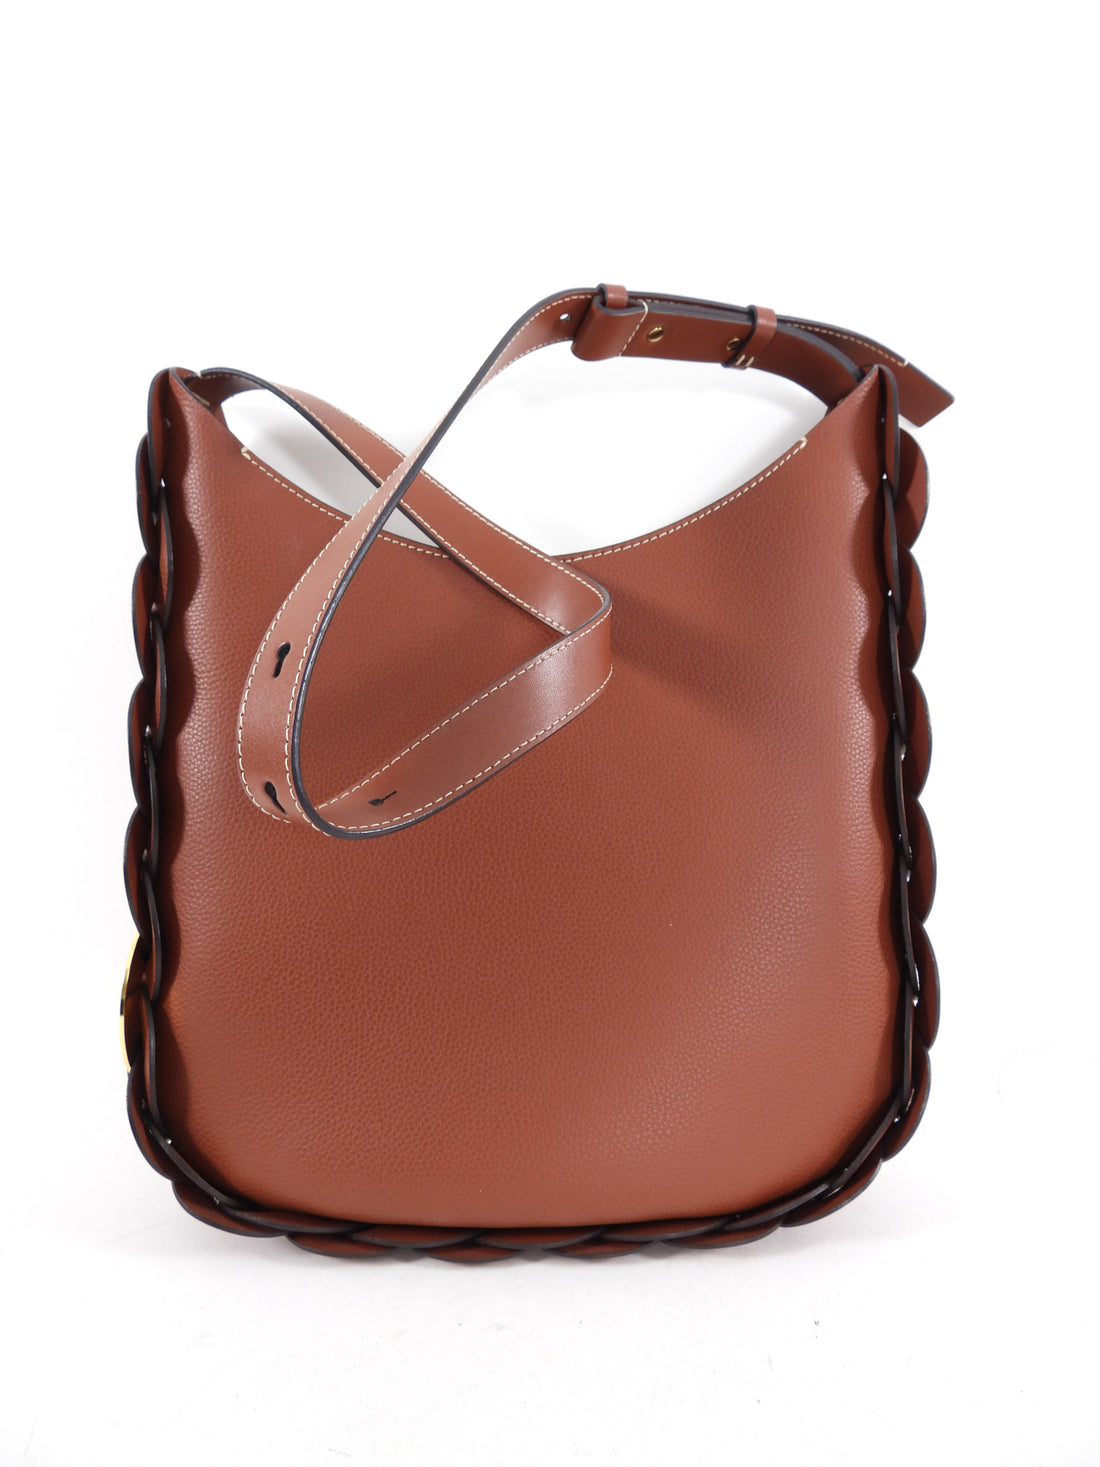 Chloe Brown Leather Darryl Medium Hobo Bag